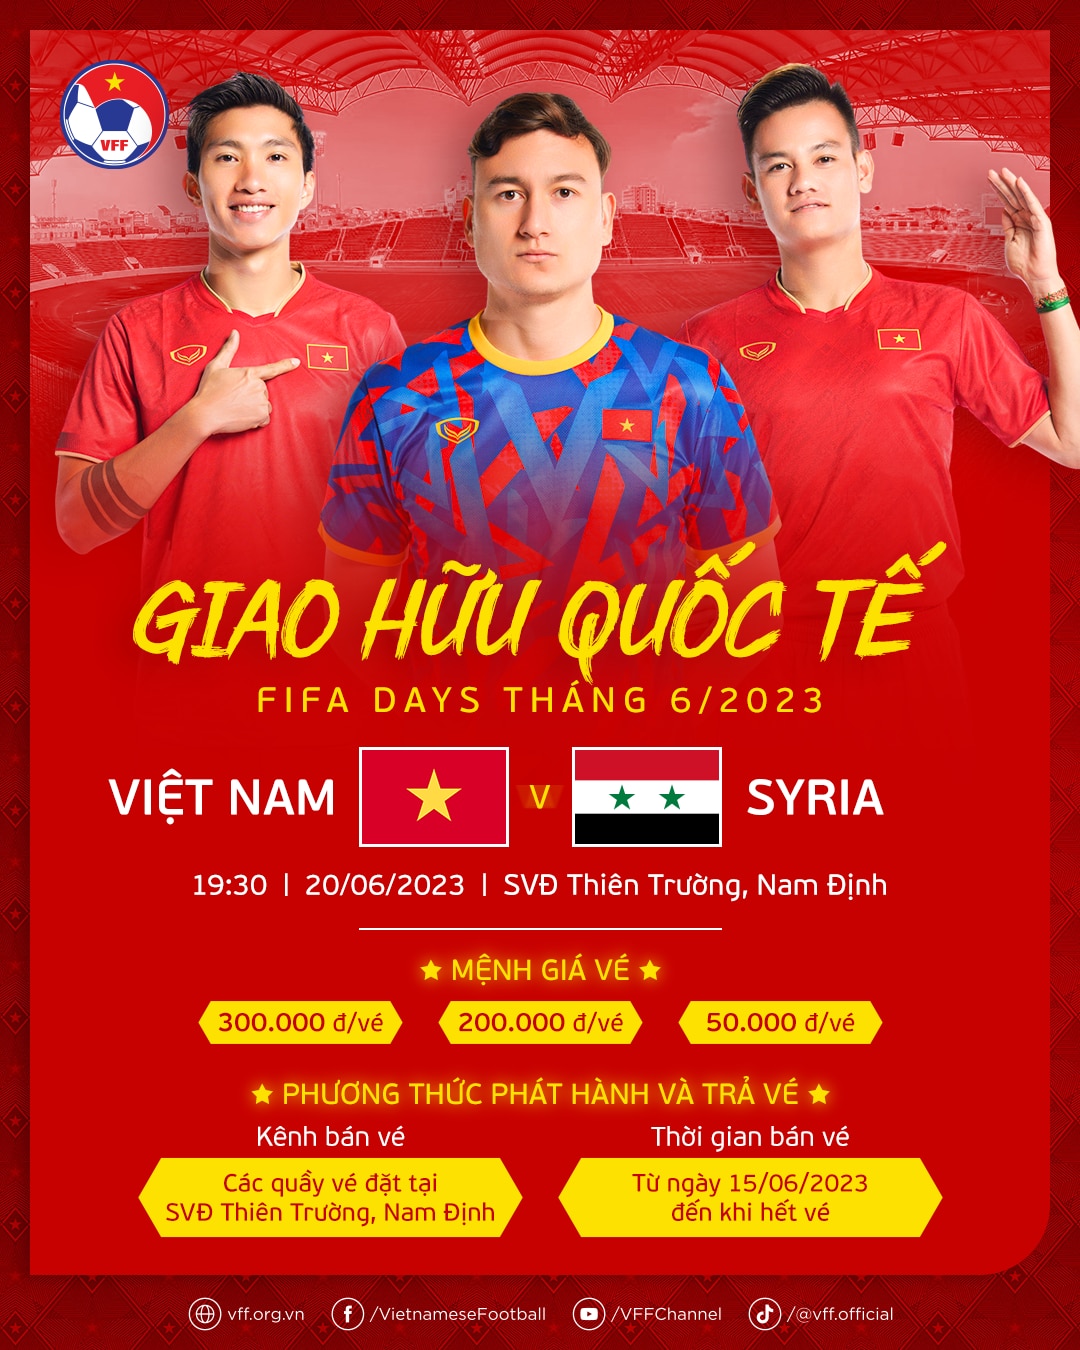 Đội tuyển Việt Nam gặp đội Syria, CĐV mua vé xem ở đâu?  - Ảnh 1.